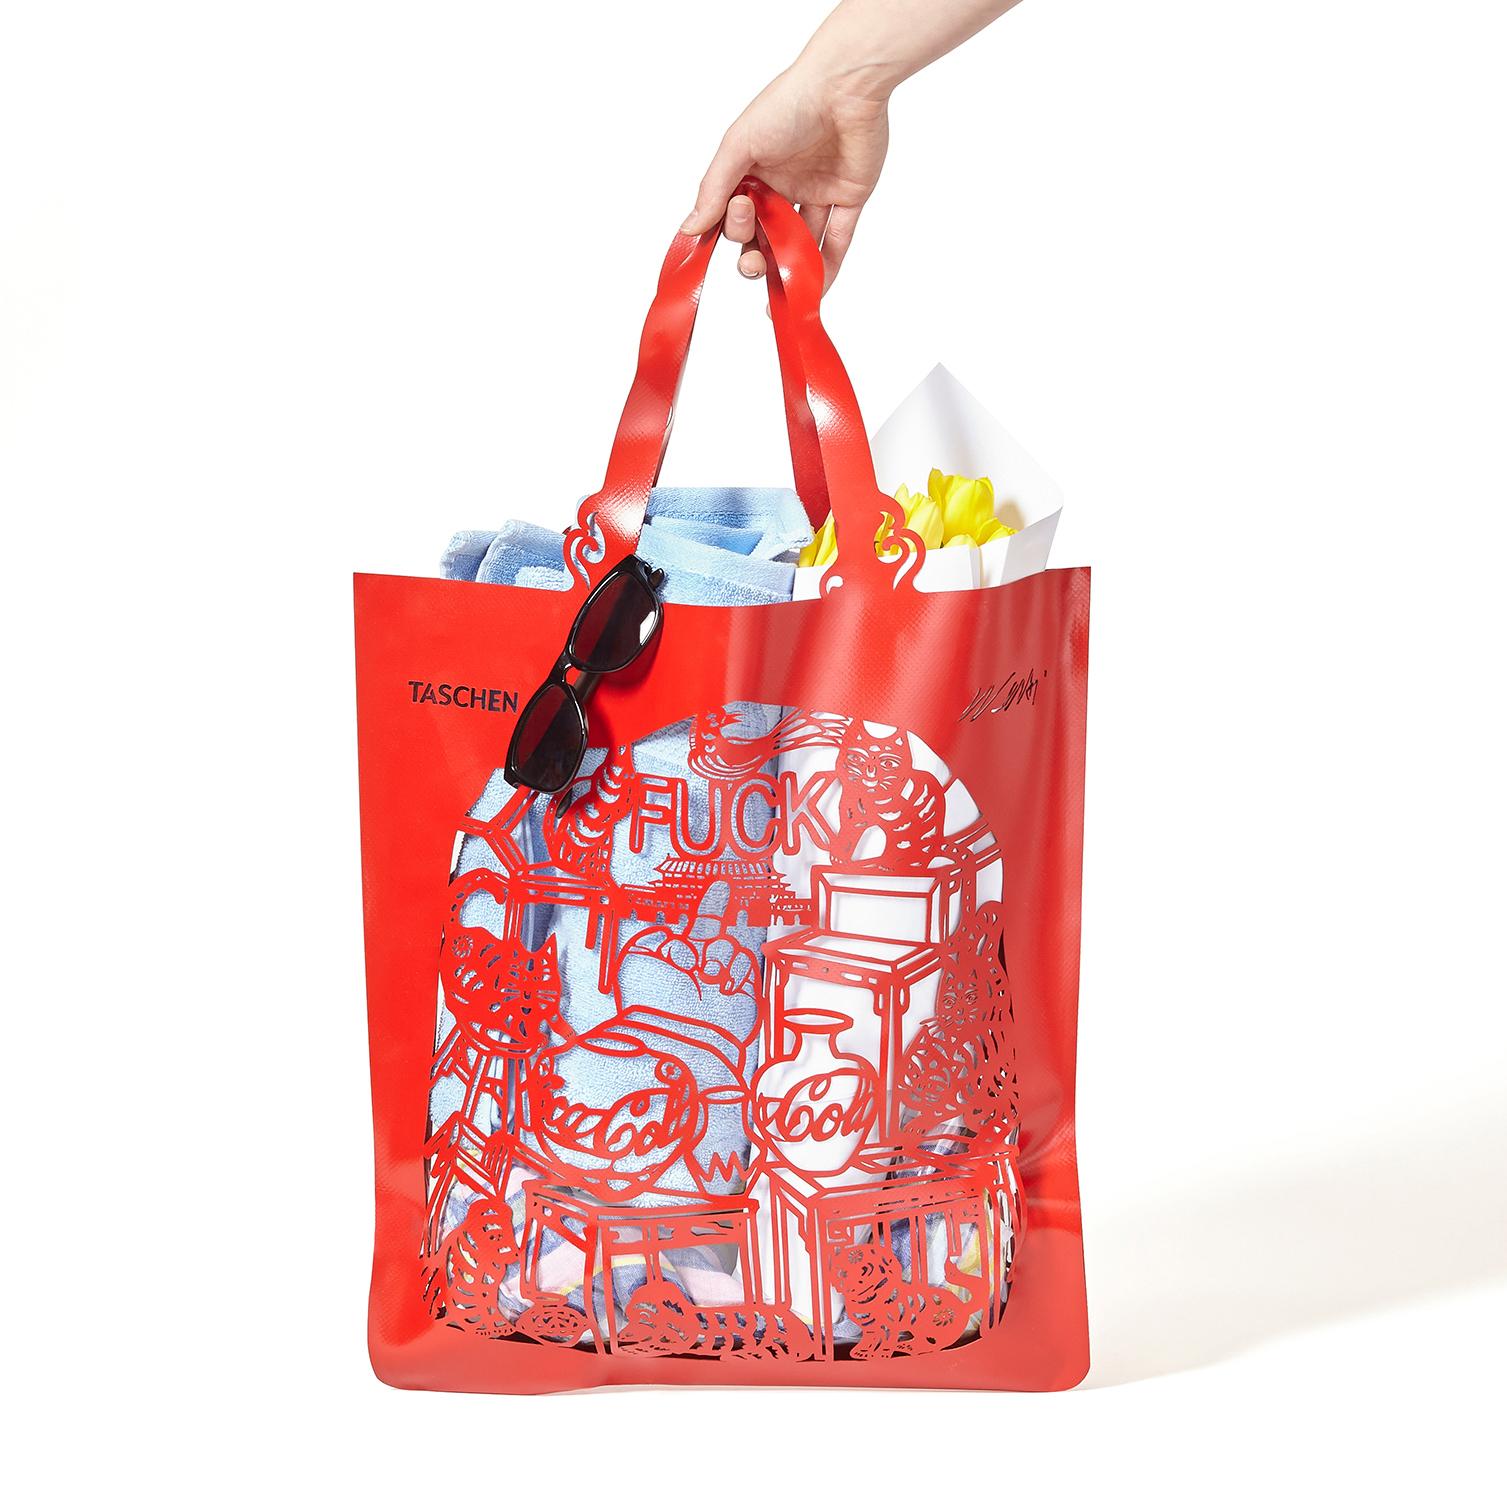 Rote PVC-Tasche mit transparenter Einlage
Maße: 18.5 x 25,4 Zoll (ohne Griffe)
auflage von 2.500 Stück
individuelle Geschenkbox

Diese Tasche von Ai Weiwei in limitierter Auflage ist nicht nur die ultimative Tasche für den Strand und das